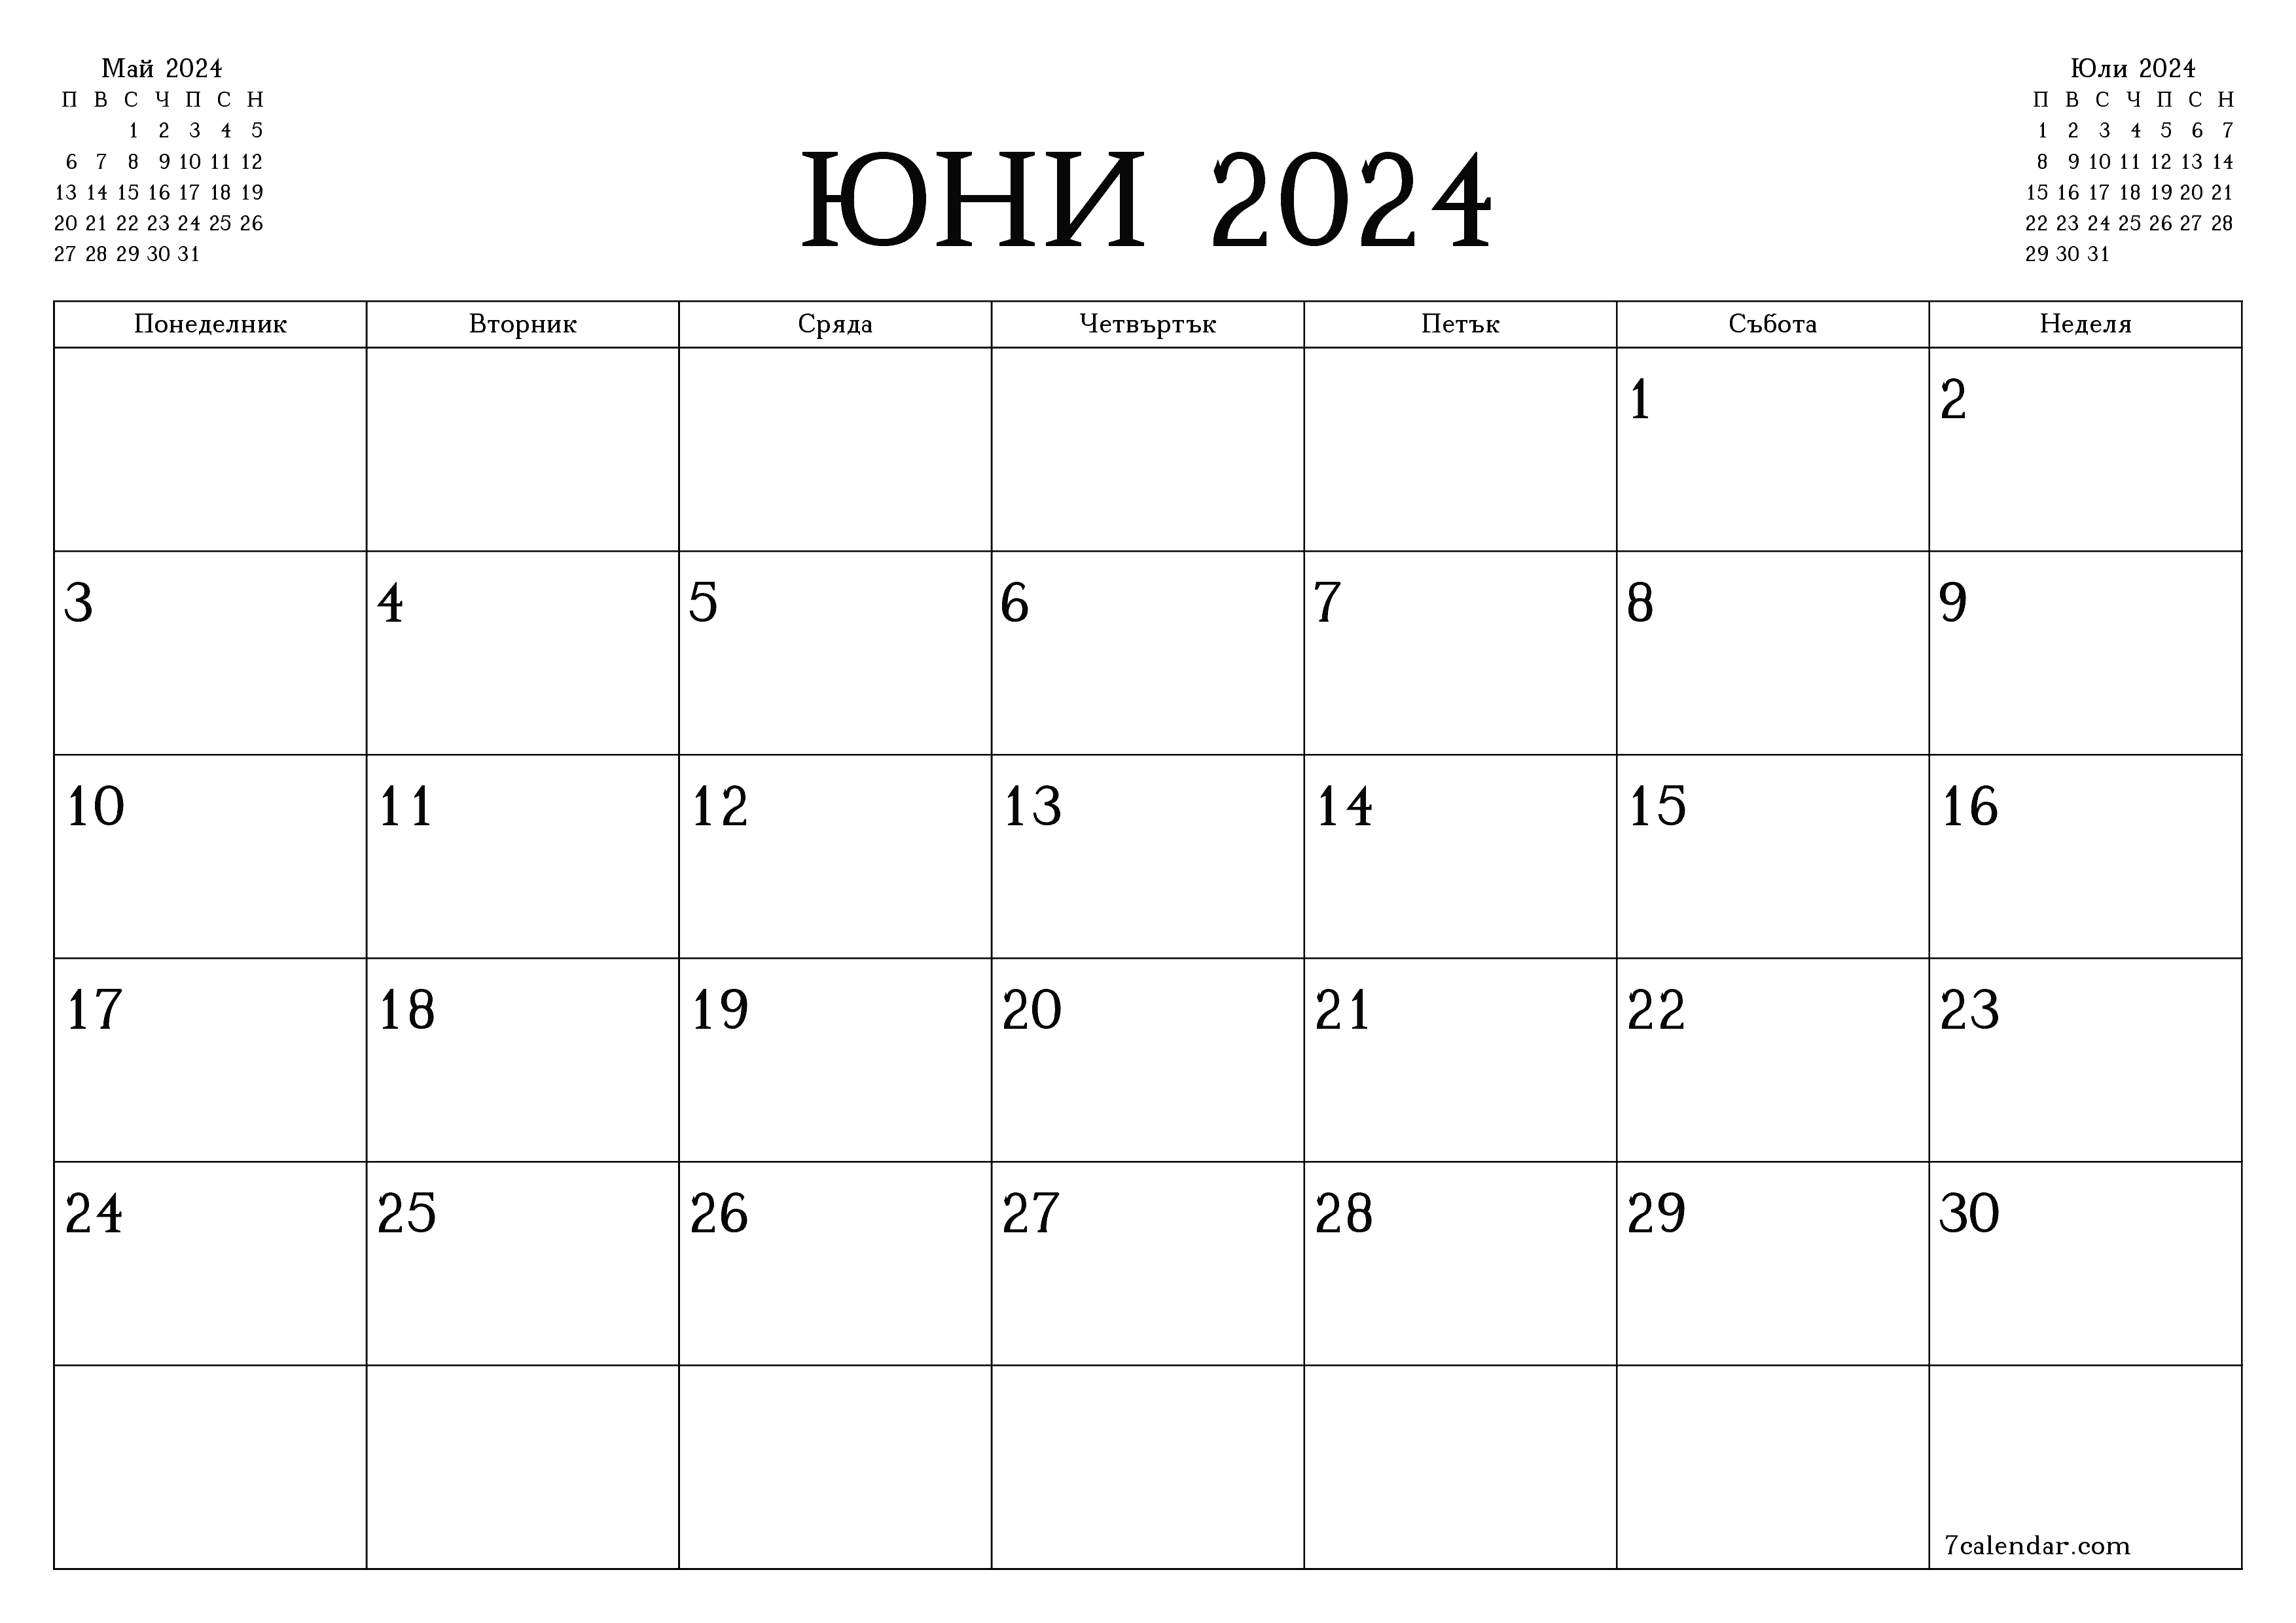 юни 2024